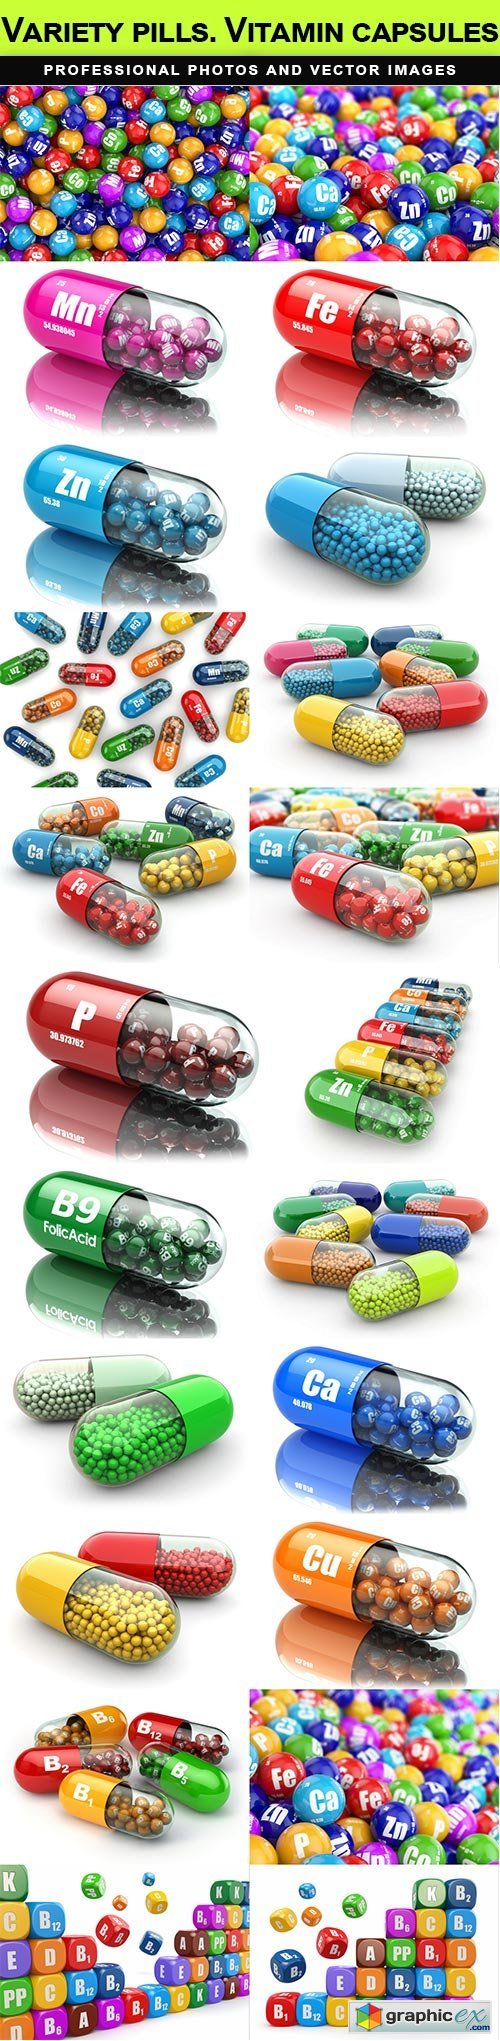 Variety pills. Vitamin capsules